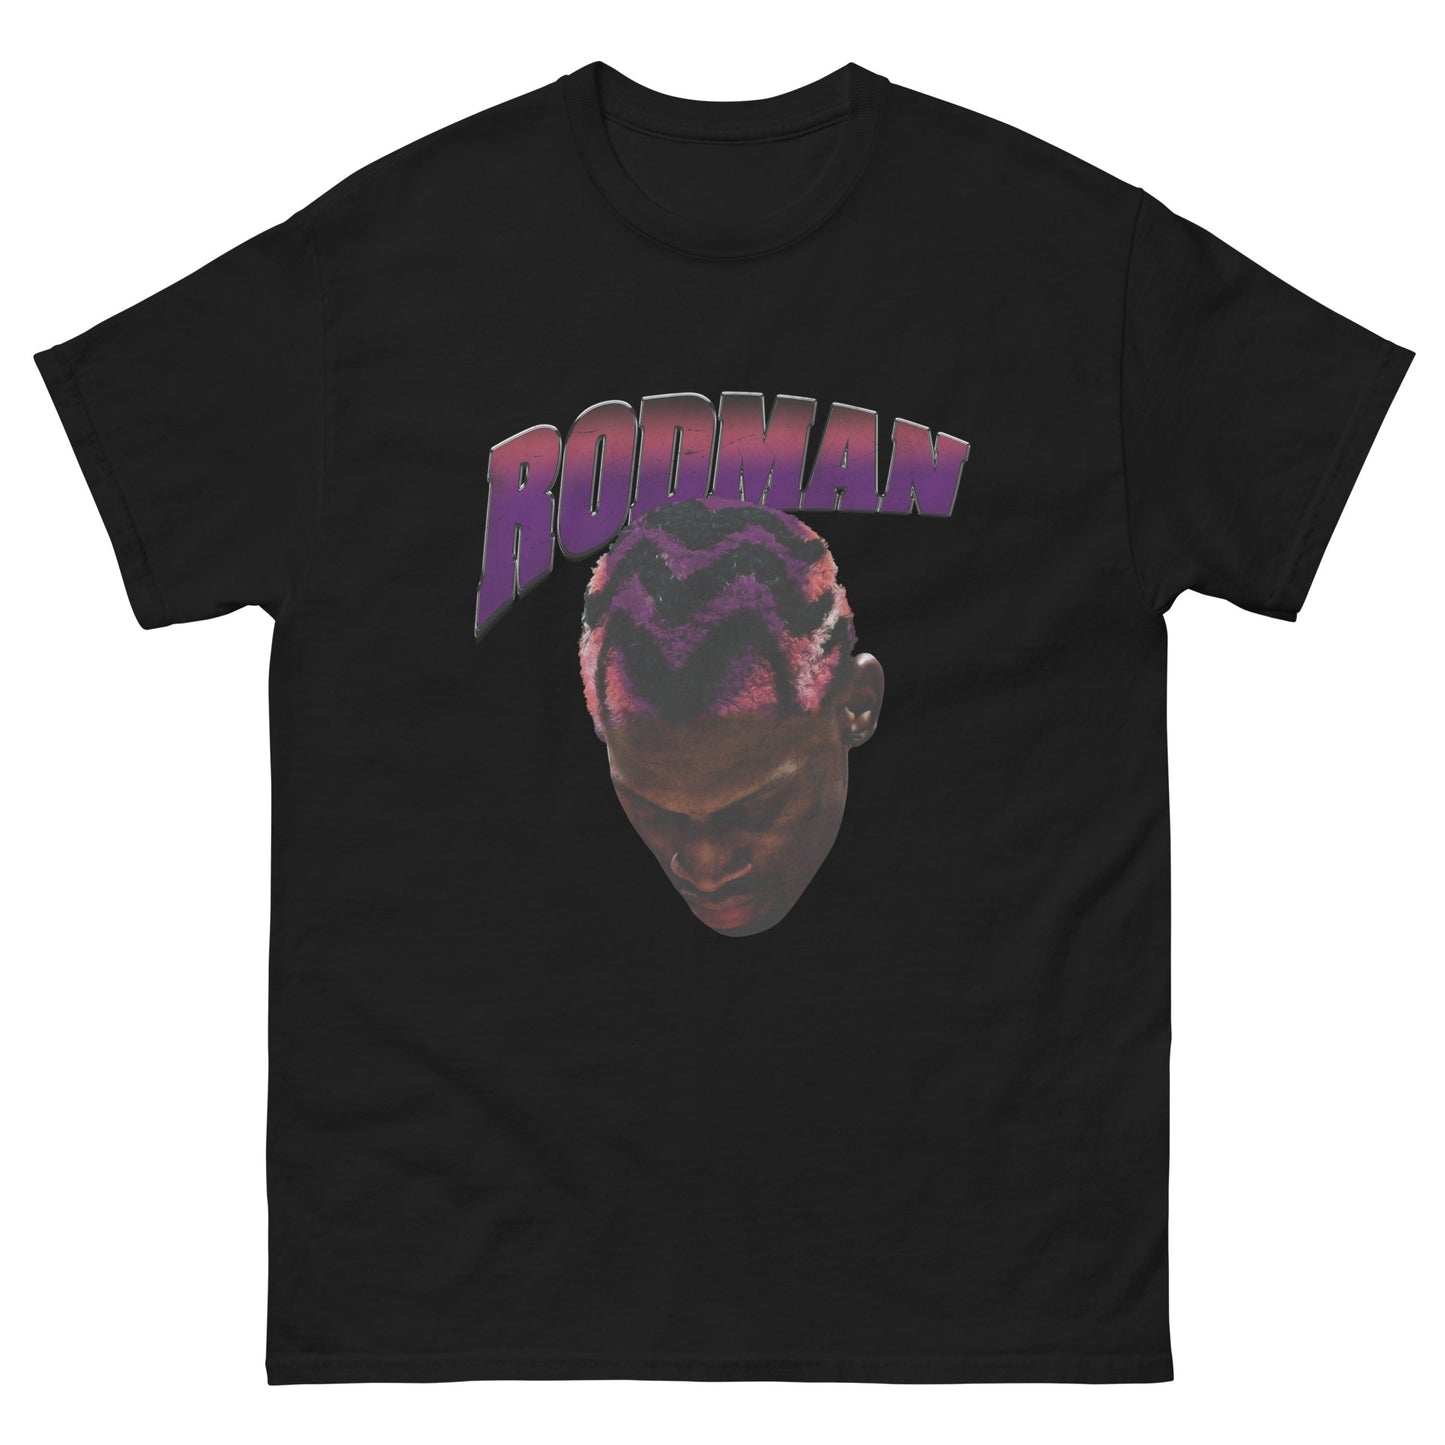 Reckless Rodman T-Shirt